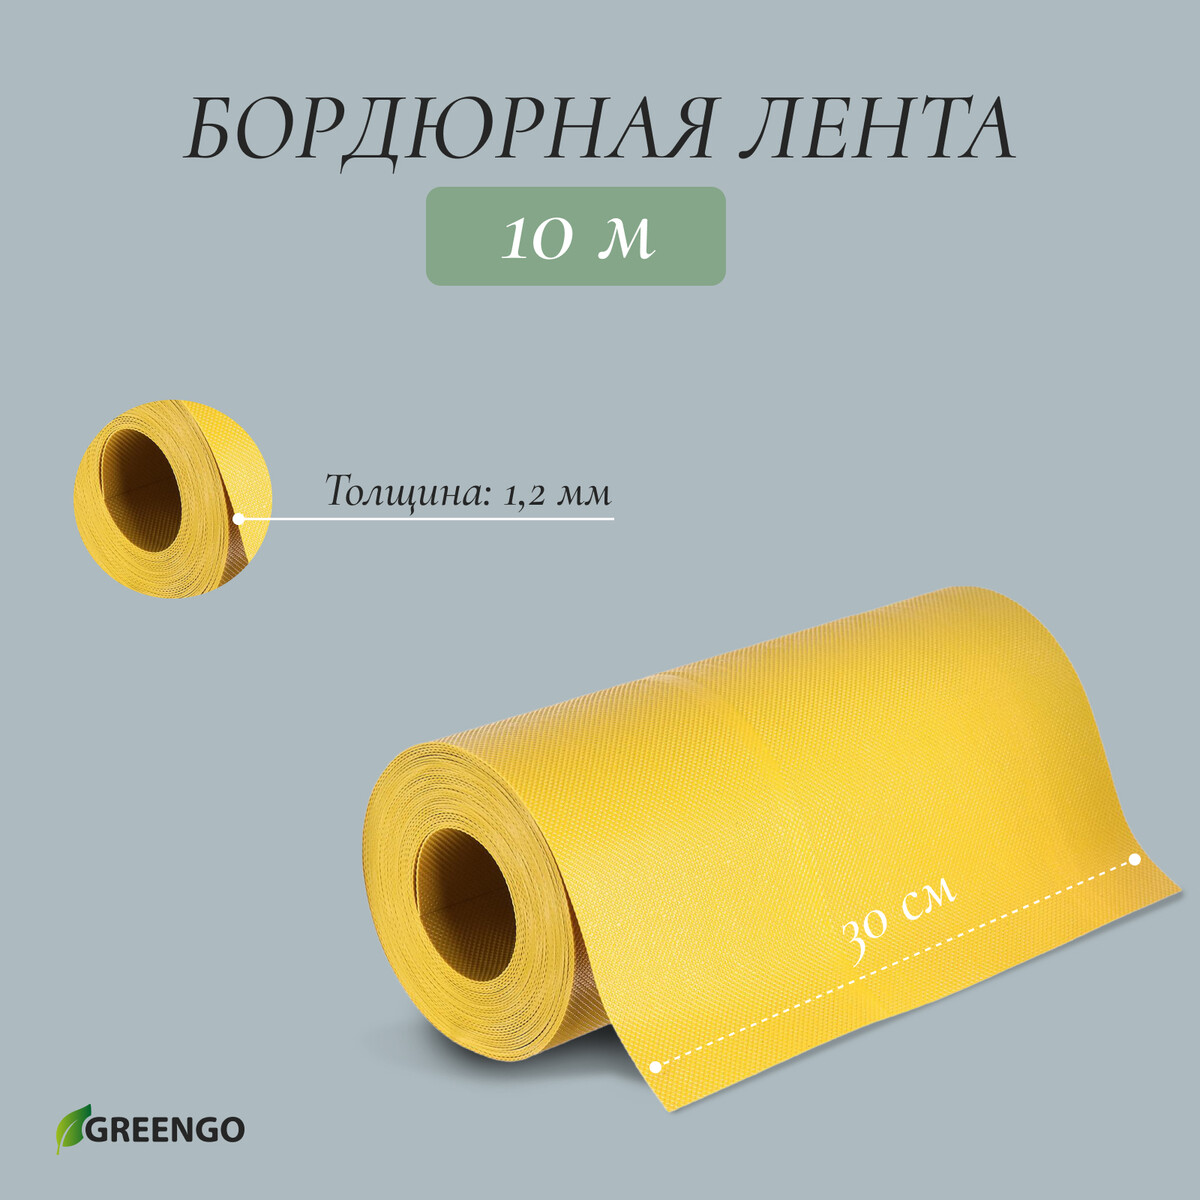 Лента бордюрная, 0.3 × 10 м, толщина 1.2 мм, пластиковая, желтая, greengo лента бордюрная 0 1 × 9 м толщина 0 6 мм пластиковая гофра желтая